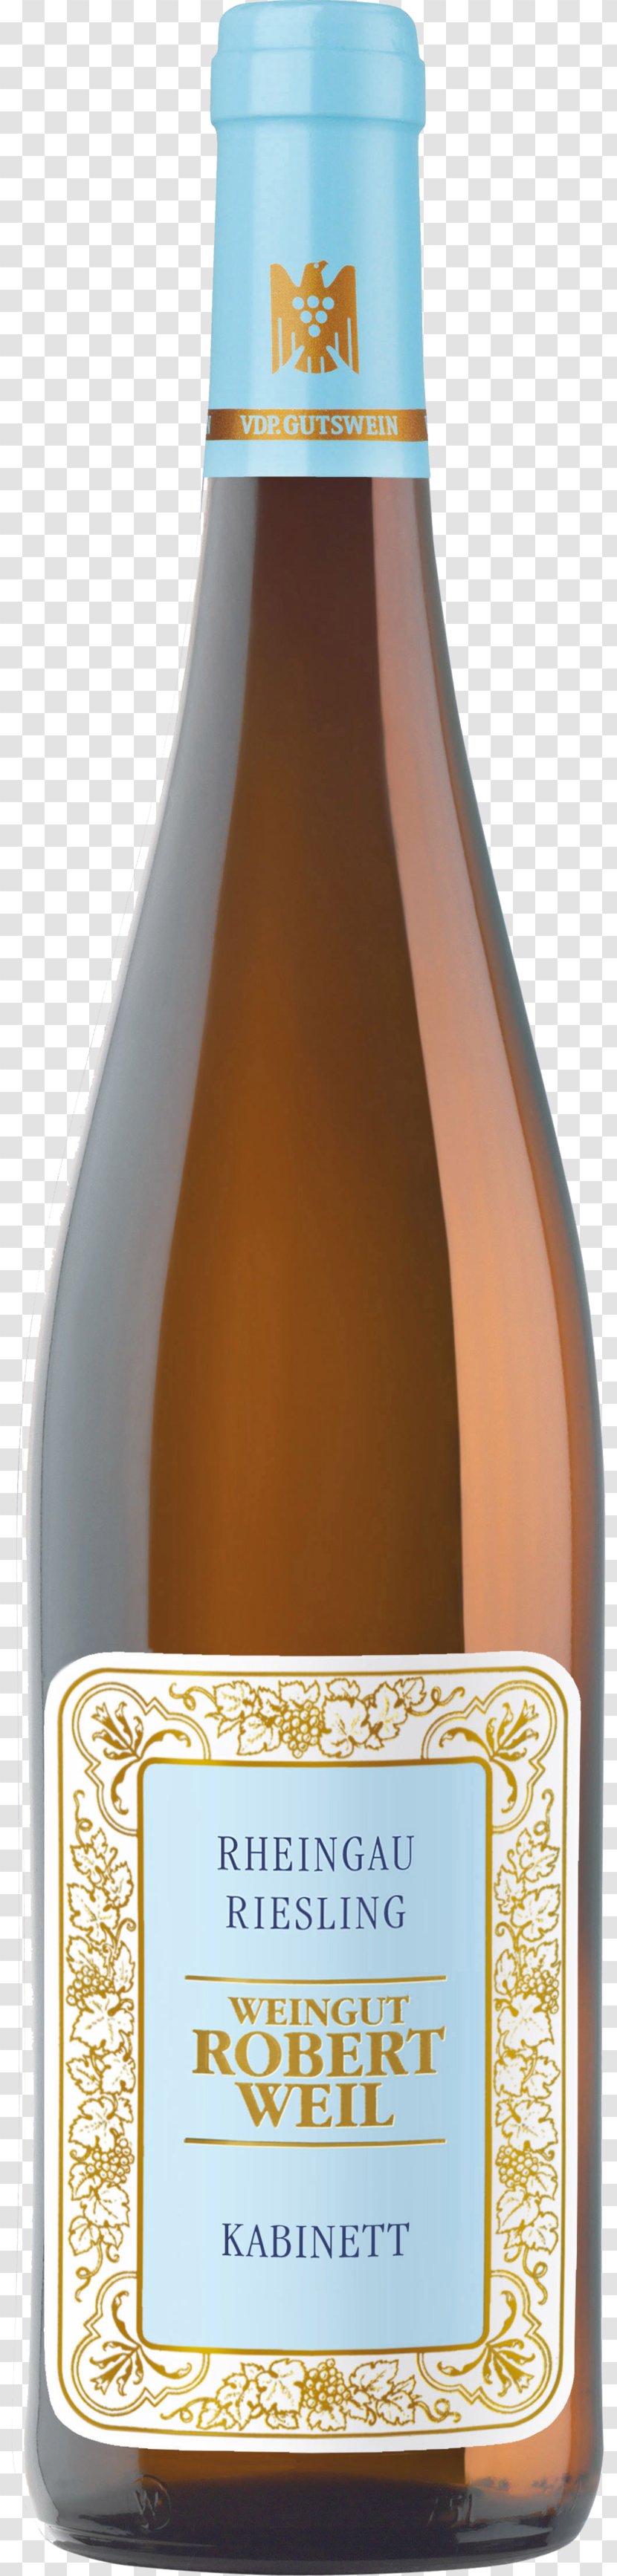 Weingut Robert Weil Riesling Rheingau Wine Kiedricher Gräfenberg - Distilled Beverage Transparent PNG